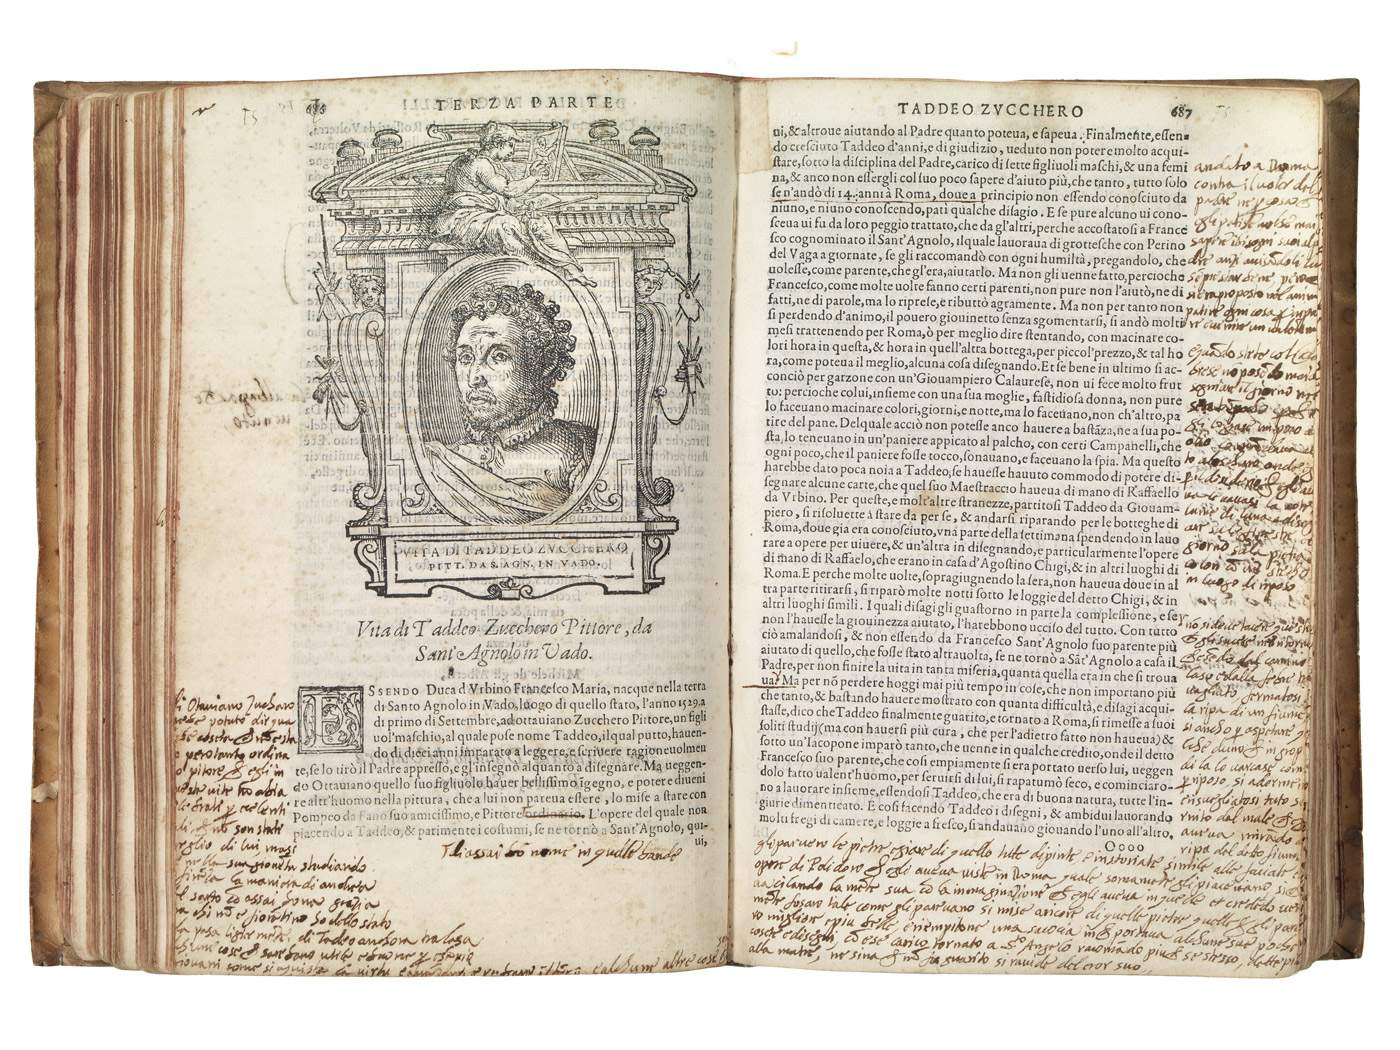 L'exemplaire rare des Vies de Vasari mis aux enchères est entre les mains du public : il a été acheté par la municipalité de Sienne.